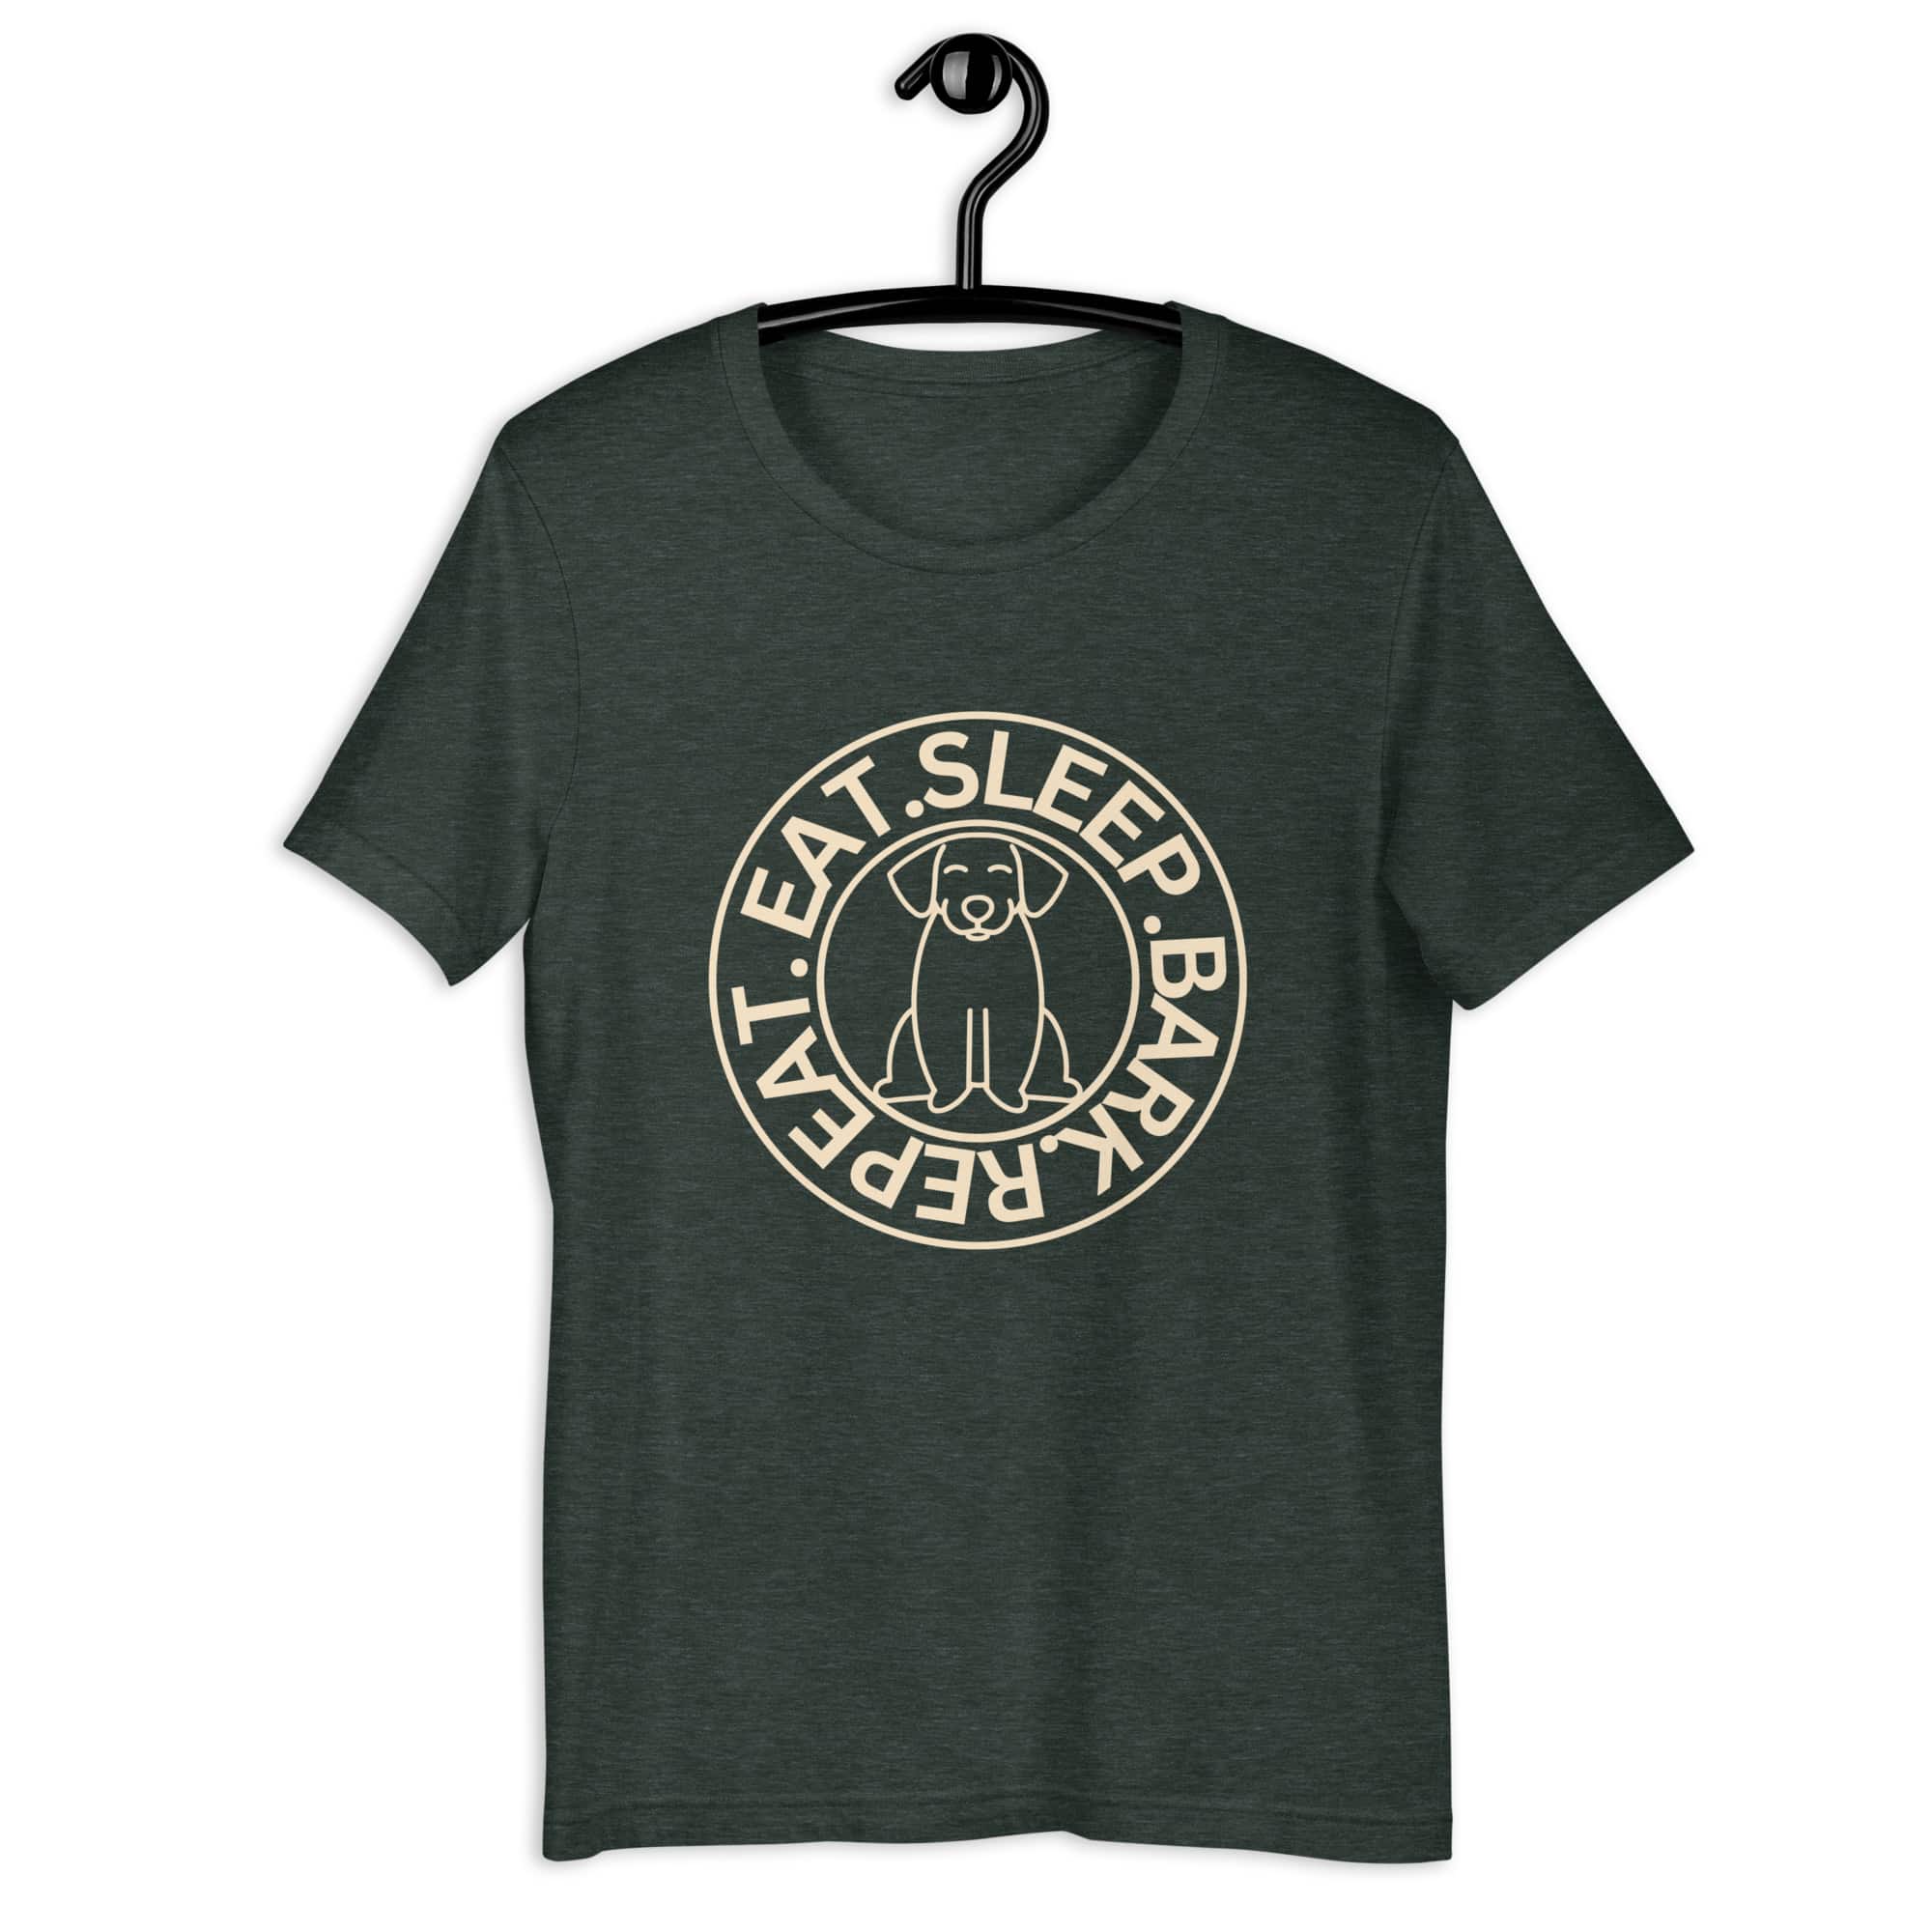 Eat Sleep Bark Repeat Ransylvanian Hound (Erdélyi Kopó) Unisex T-Shirt. Heather Forest